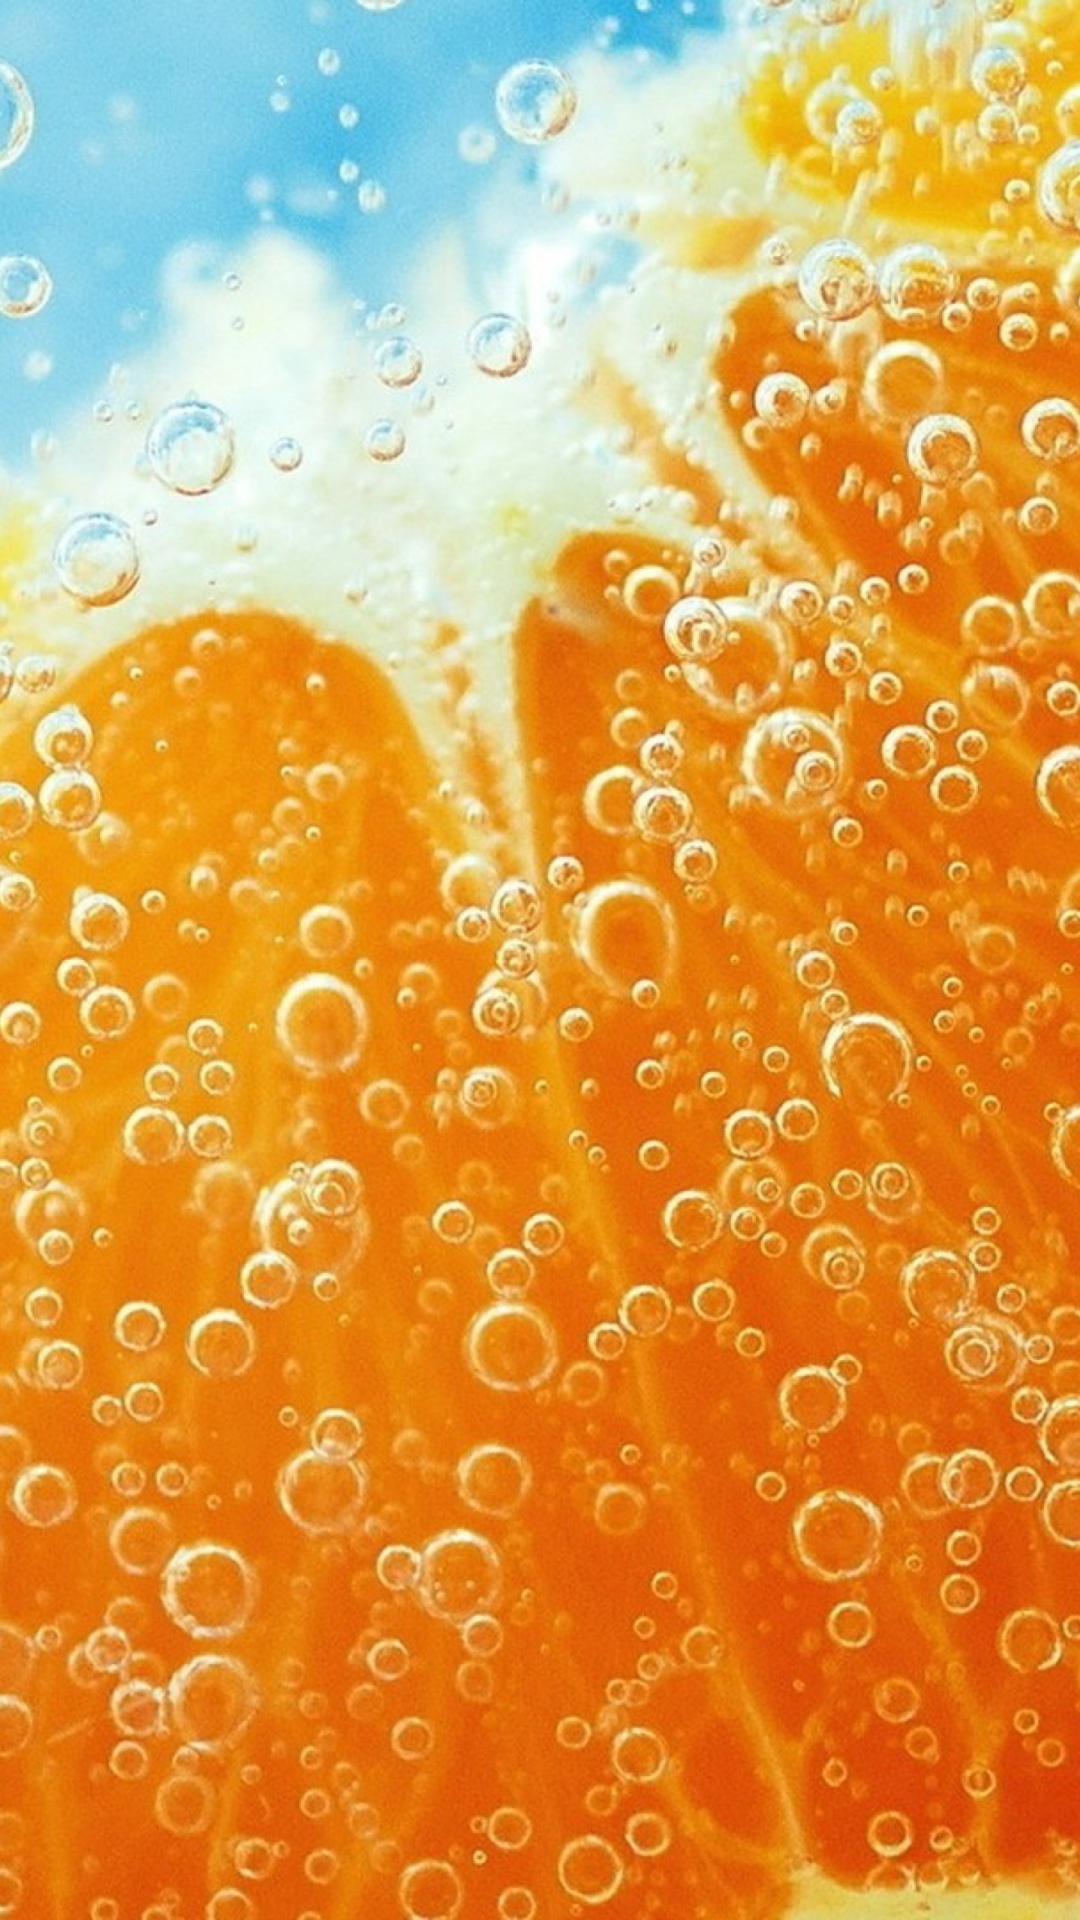 Refreshing Orange Drink wallpaper 1080x1920